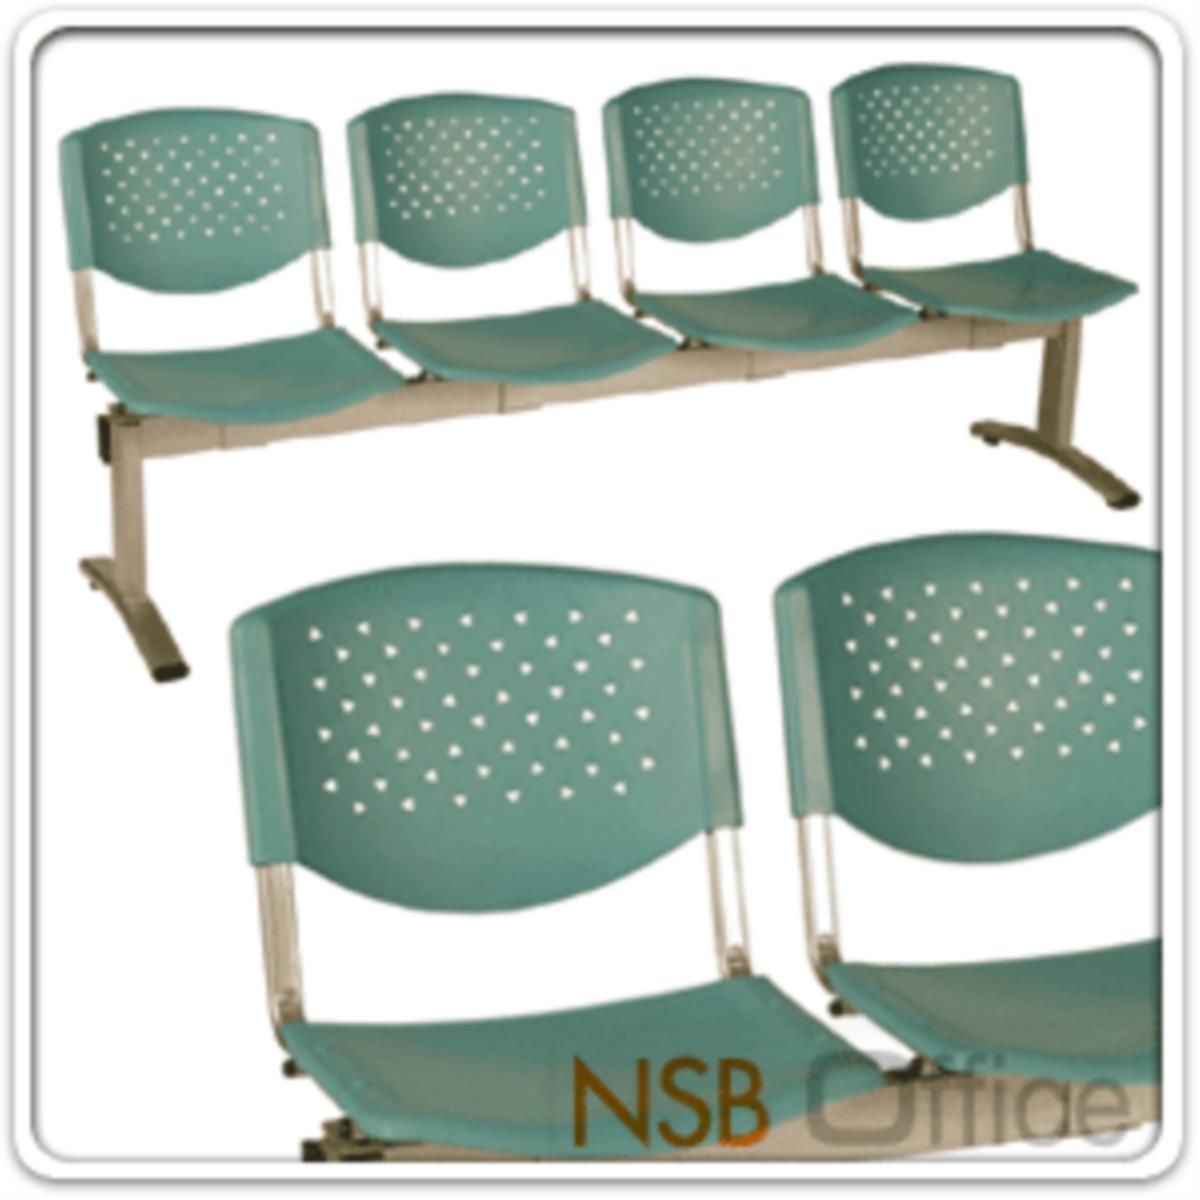 เก้าอี้นั่งคอยเฟรมโพลี่ รุ่น B046 2 ,3 ,4 ที่นั่ง ขนาด 99W ,149W ,202W cm. ขาเหล็ก